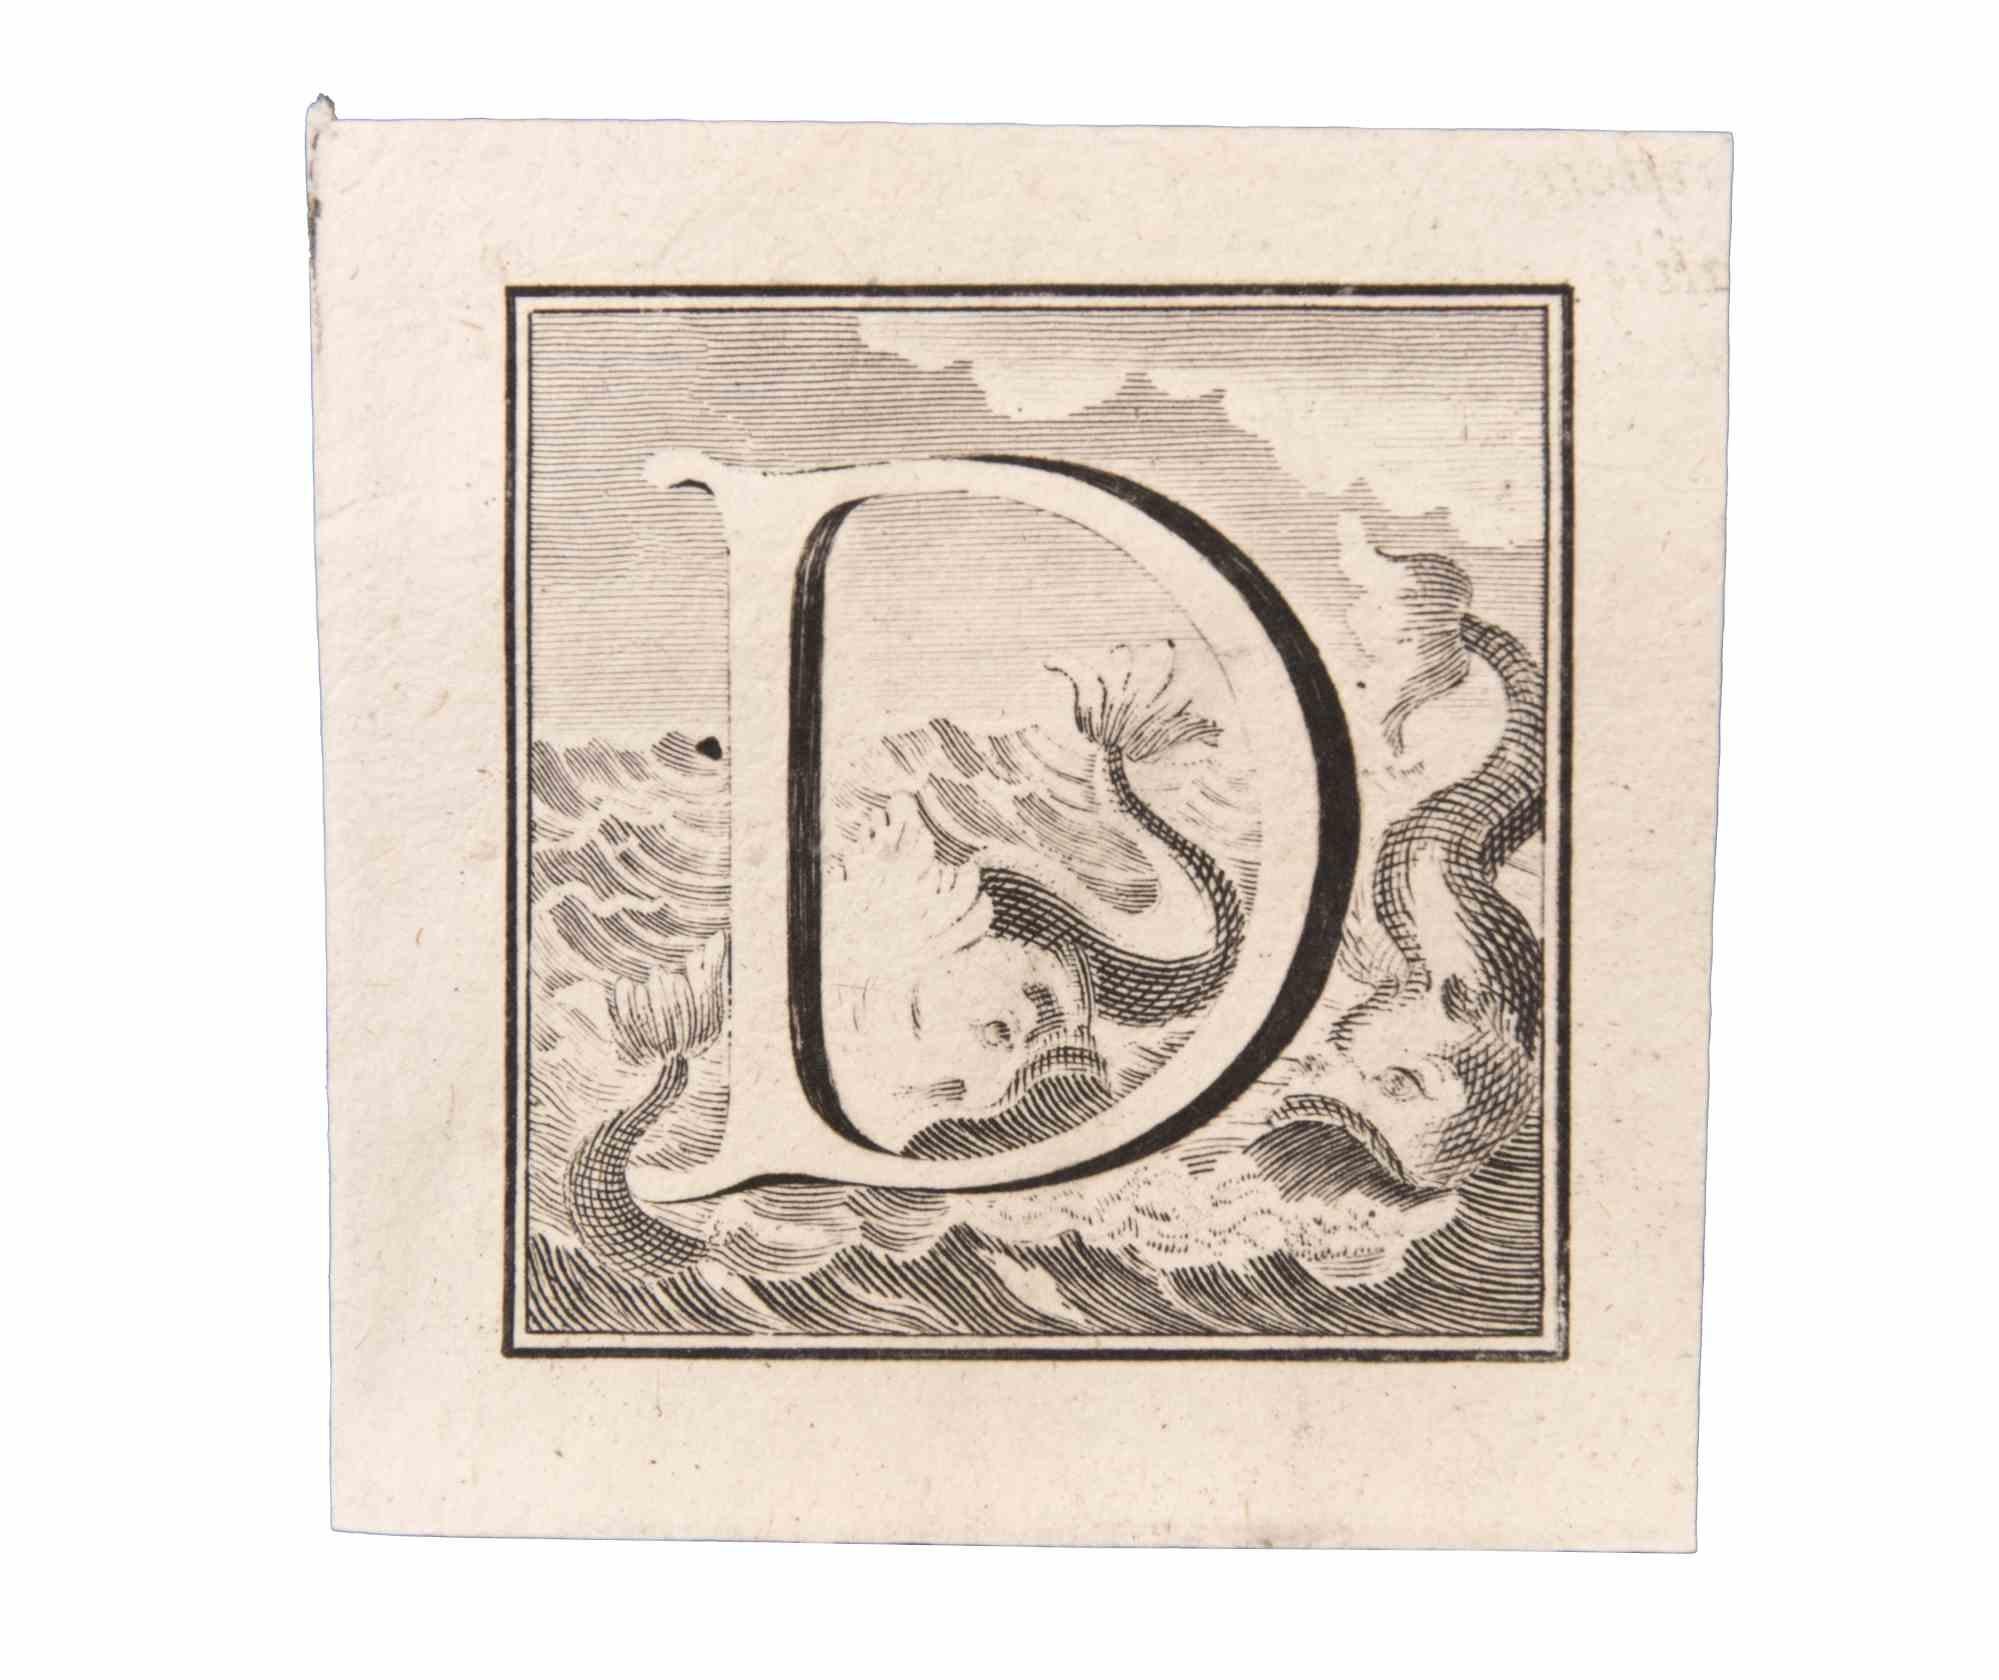 Lettre D est une gravure réalisée par Luigi Vanvitelli artiste du 18ème siècle.

La gravure appartient à la suite d'estampes "Antiquités d'Herculanum exposées" (titre original : "Le Antichità di Ercolano Esposte"), un volume de huit gravures des